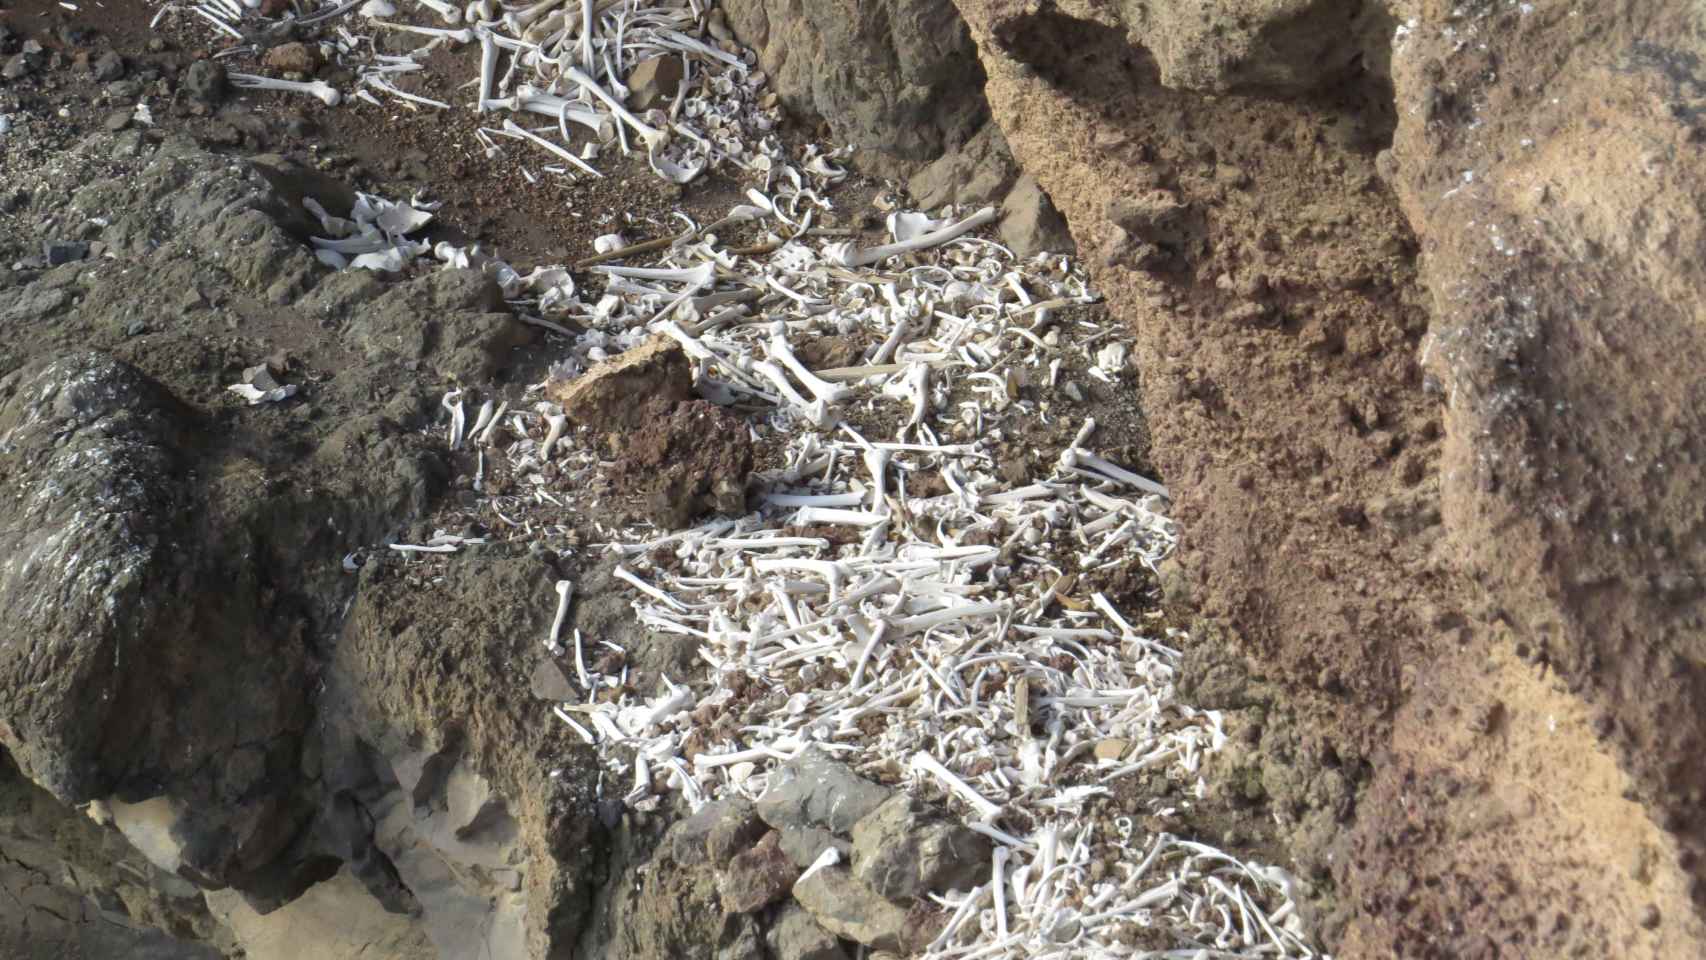 El enterramiento prehispánico descubierto el verano pasado en una cueva inaccesible del barranco de Guayadeque